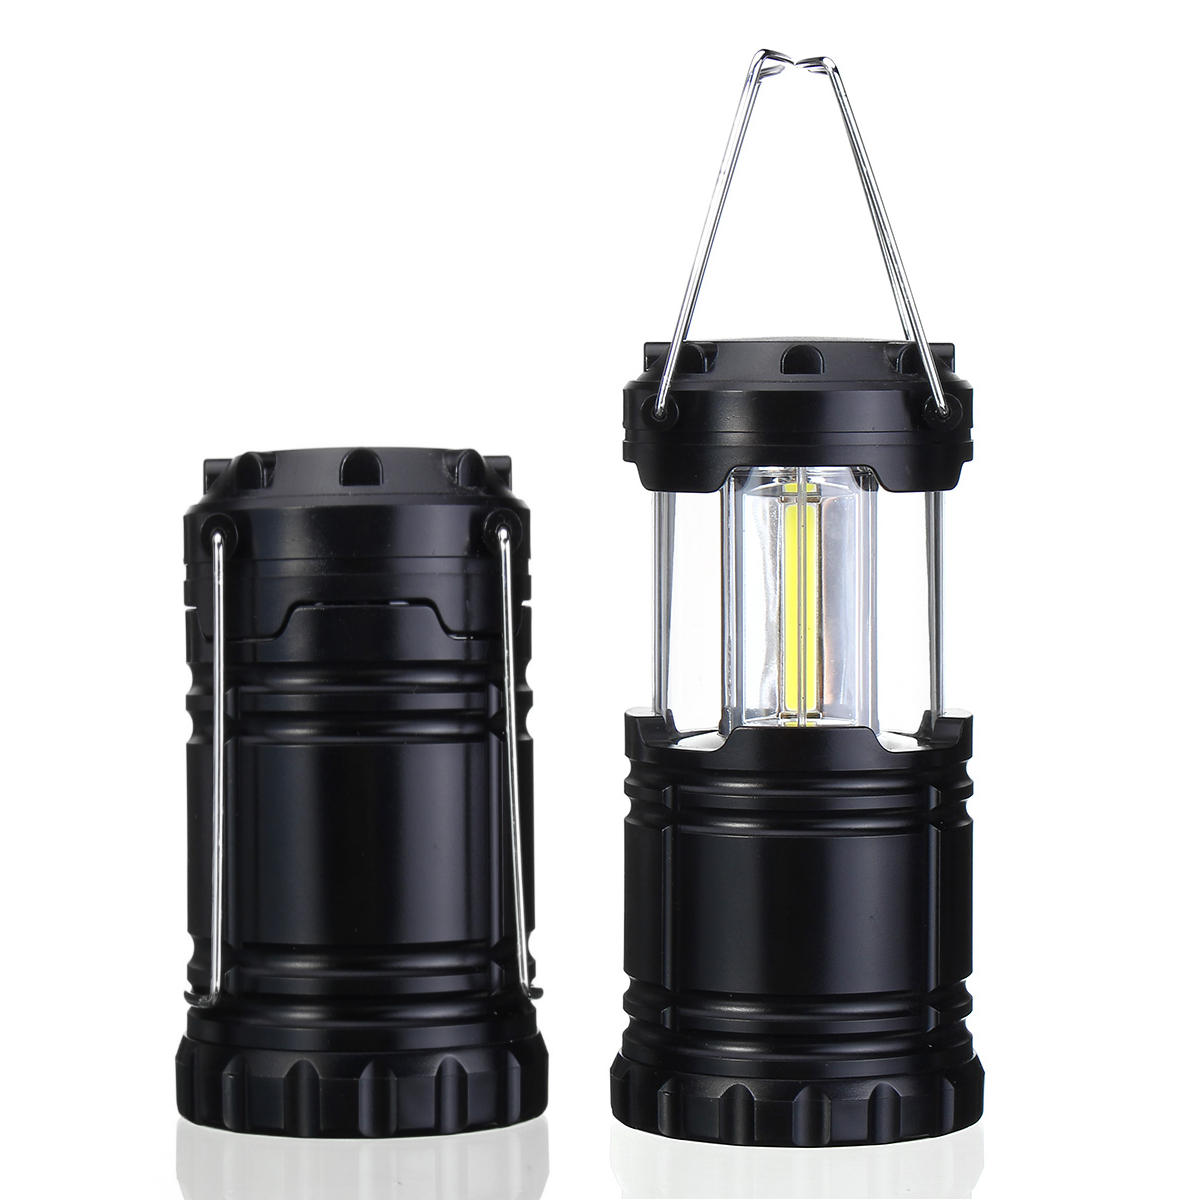 Portátil LED Lanterna lanterna acampamento 3 AA Baterias Kits de sobrevivência para viagens de caminhada ao ar livre